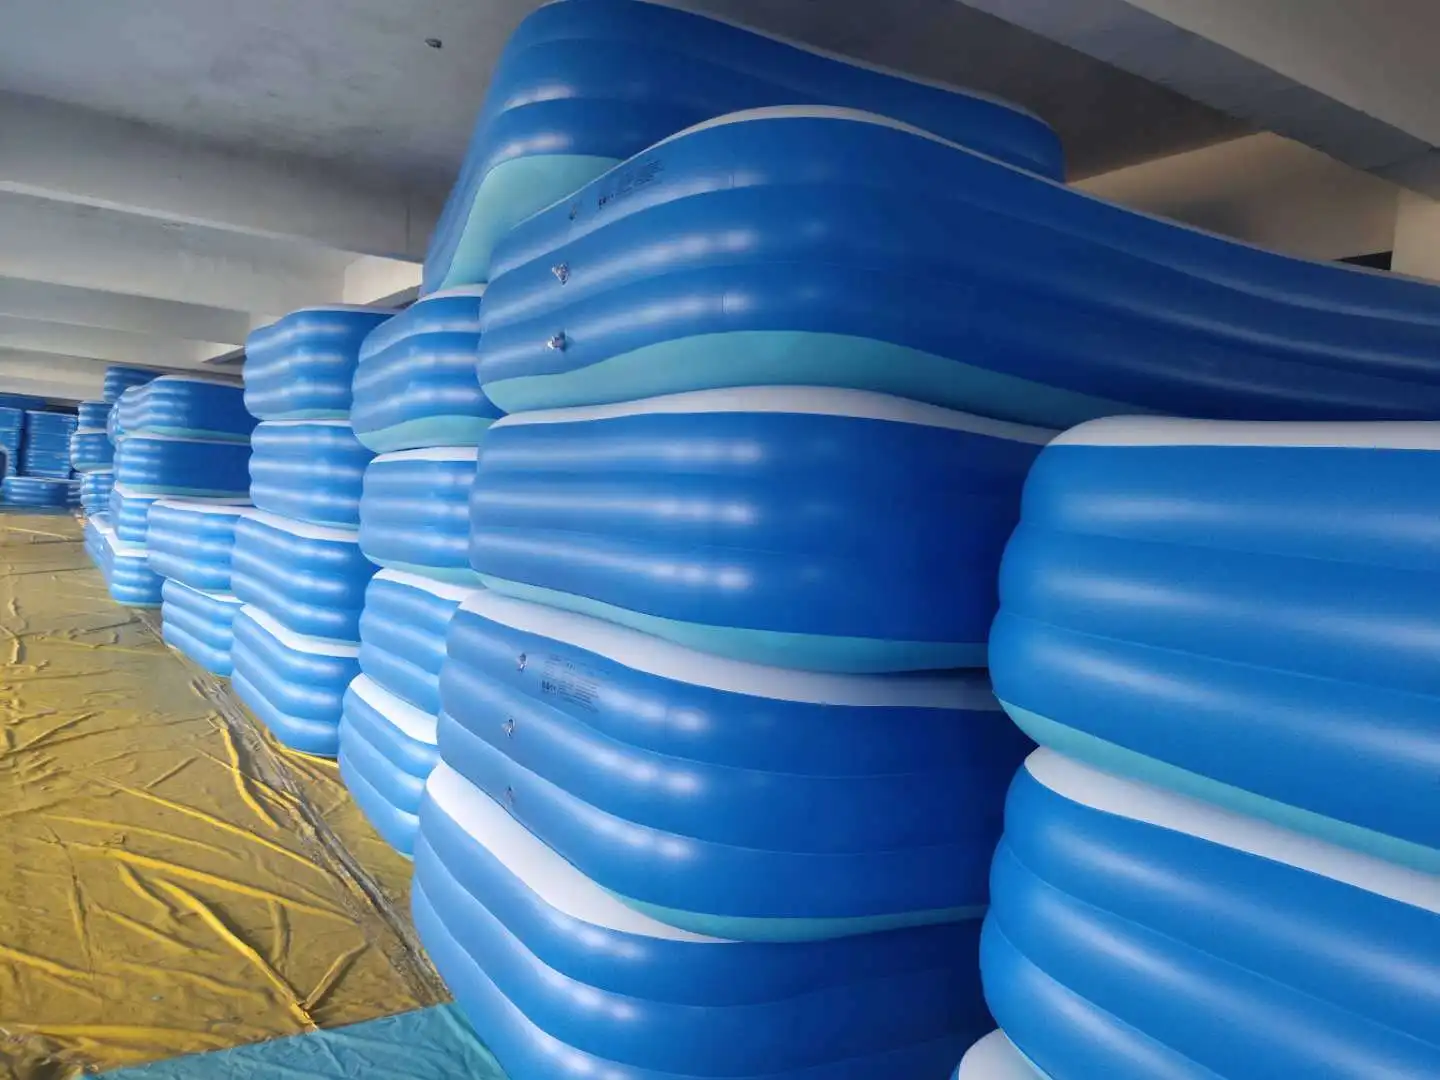 
Big Folding Outdoor Garden Indoor Adult Kids Plastic Pvc Inflatable Swimming Pool 